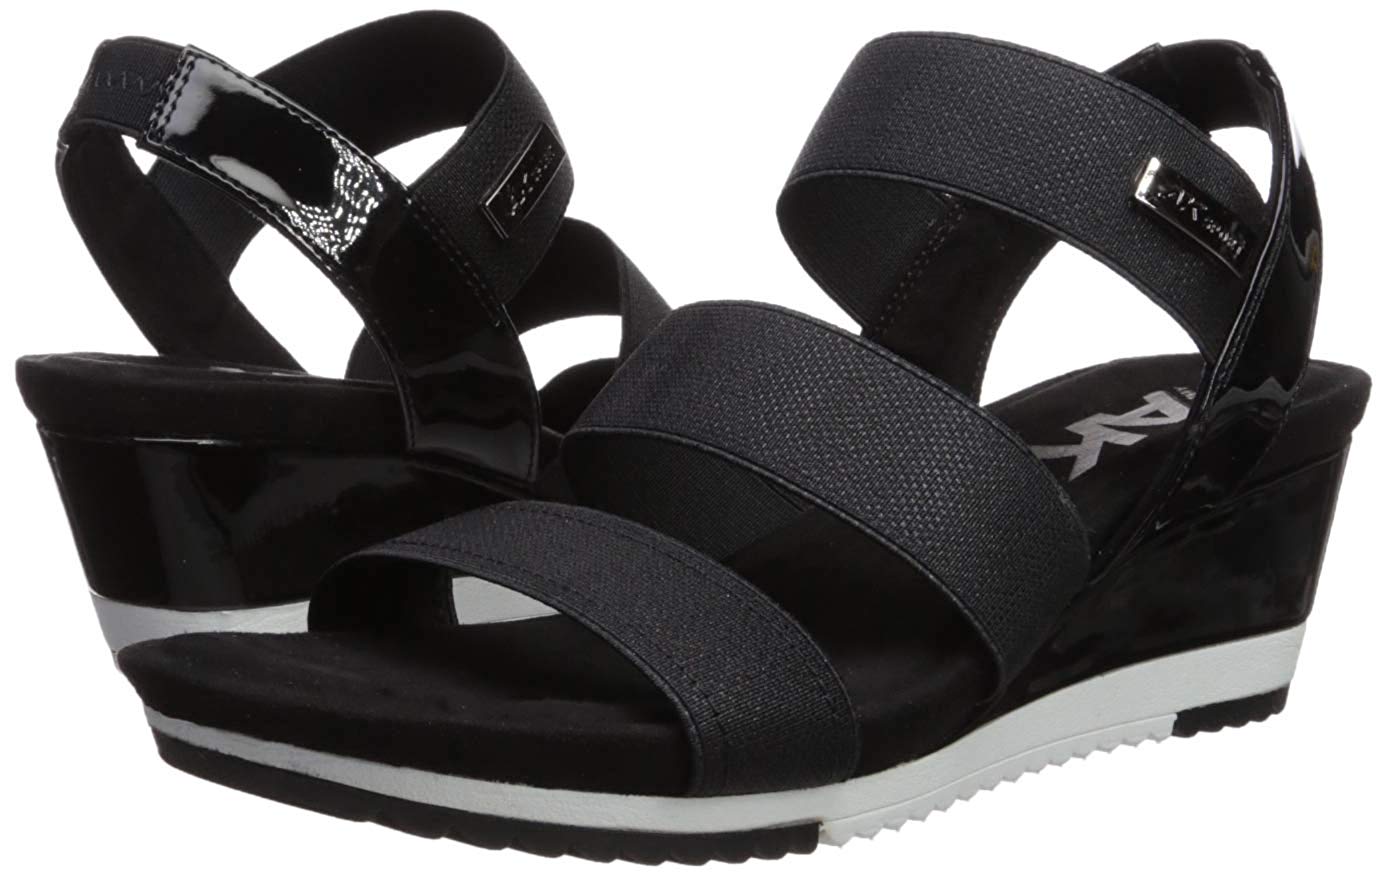 Anne Klein Women's Summertime Wedges Sandal, Black, Size 8.5 | eBay